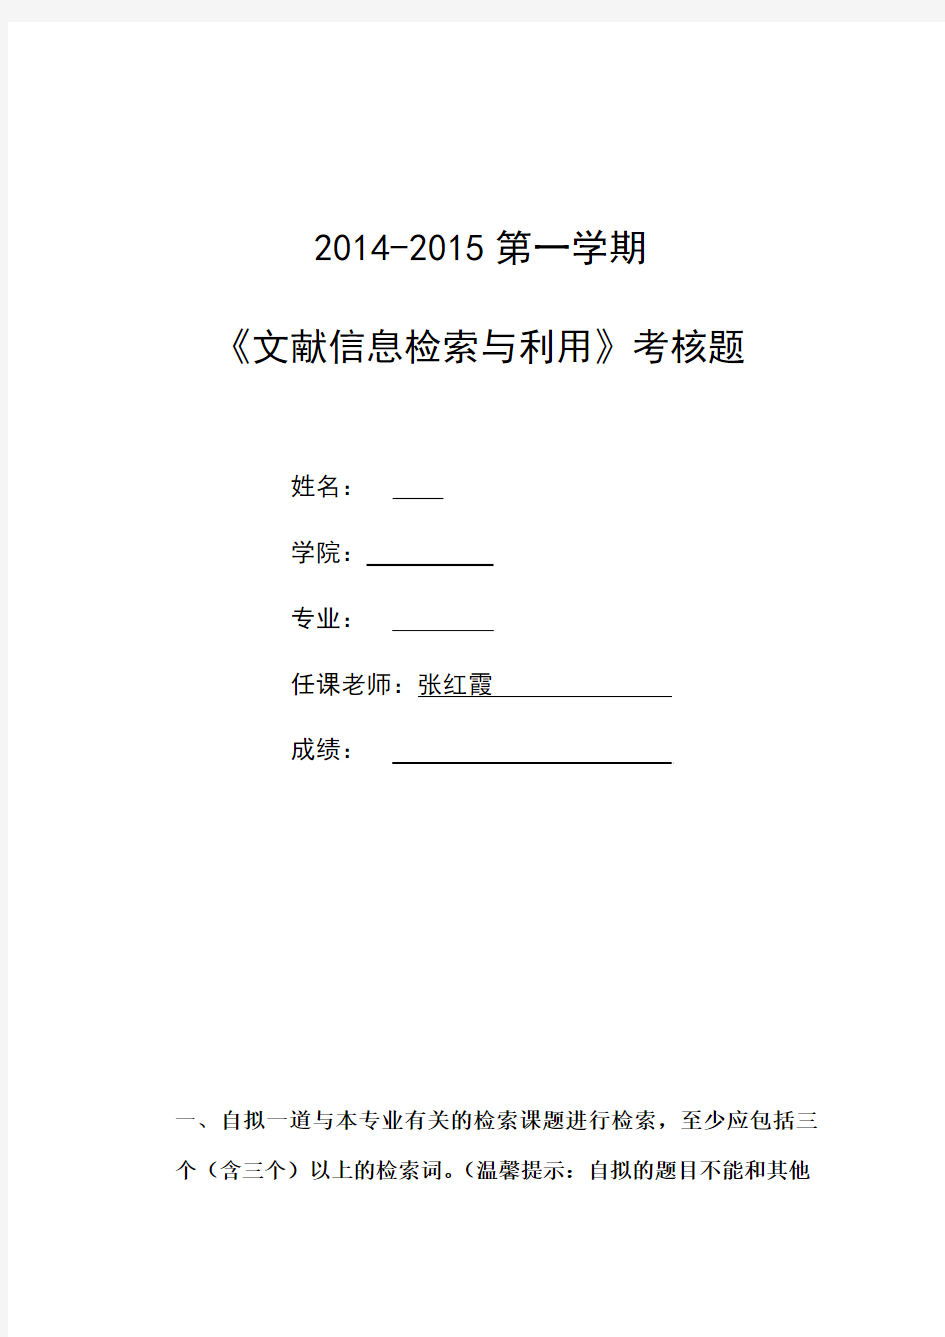 海南大学 文献信息检索2014-2015上学期试卷